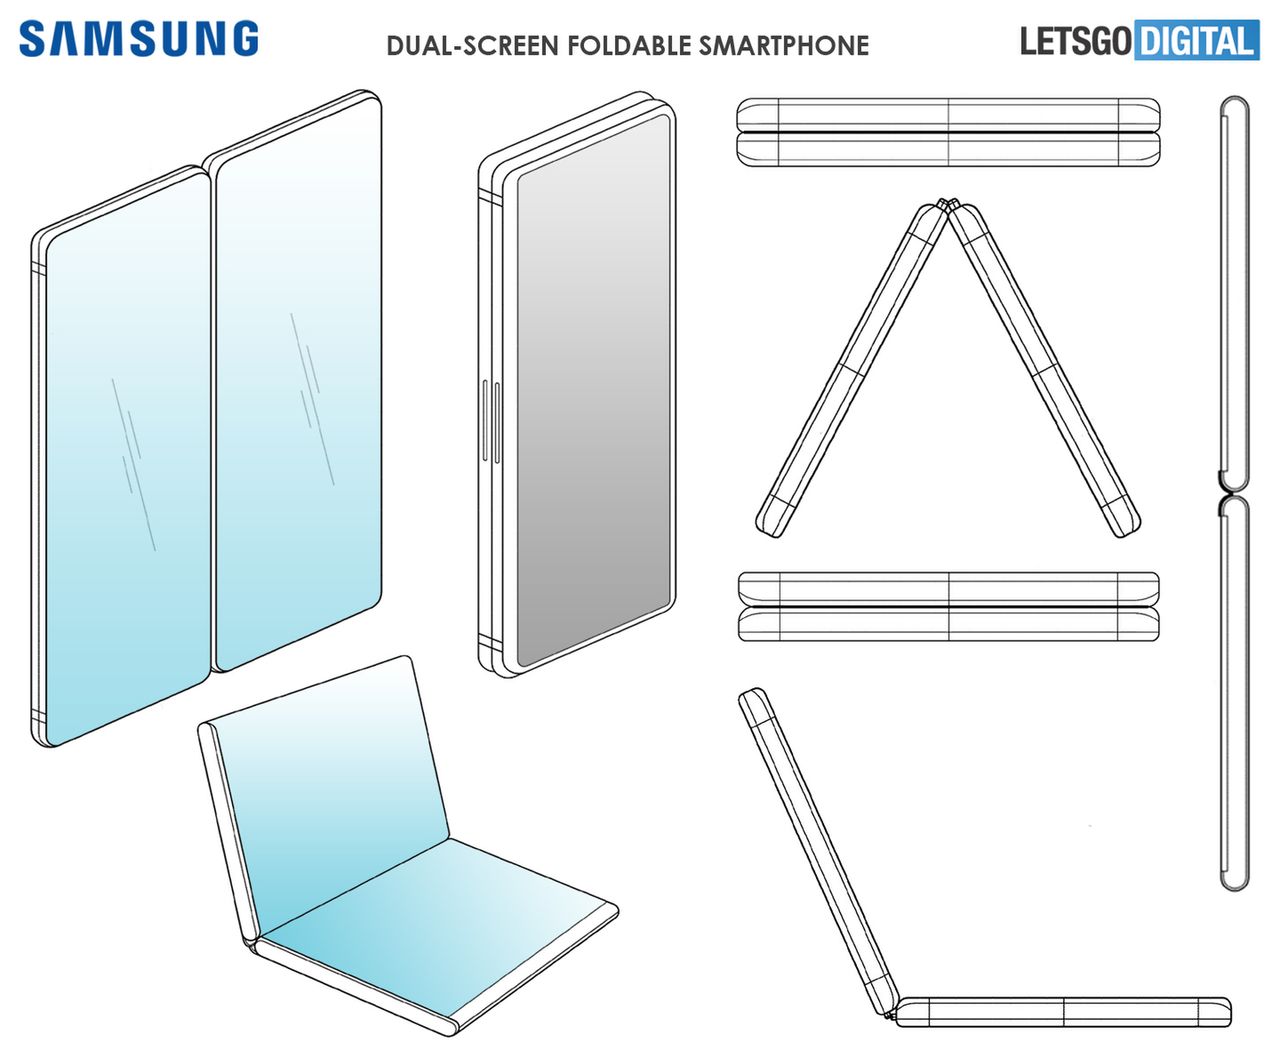 Wizja składanego smartfona Samsung według ostatnio upublicznionego patentu, źródło: LetsGoDigital.